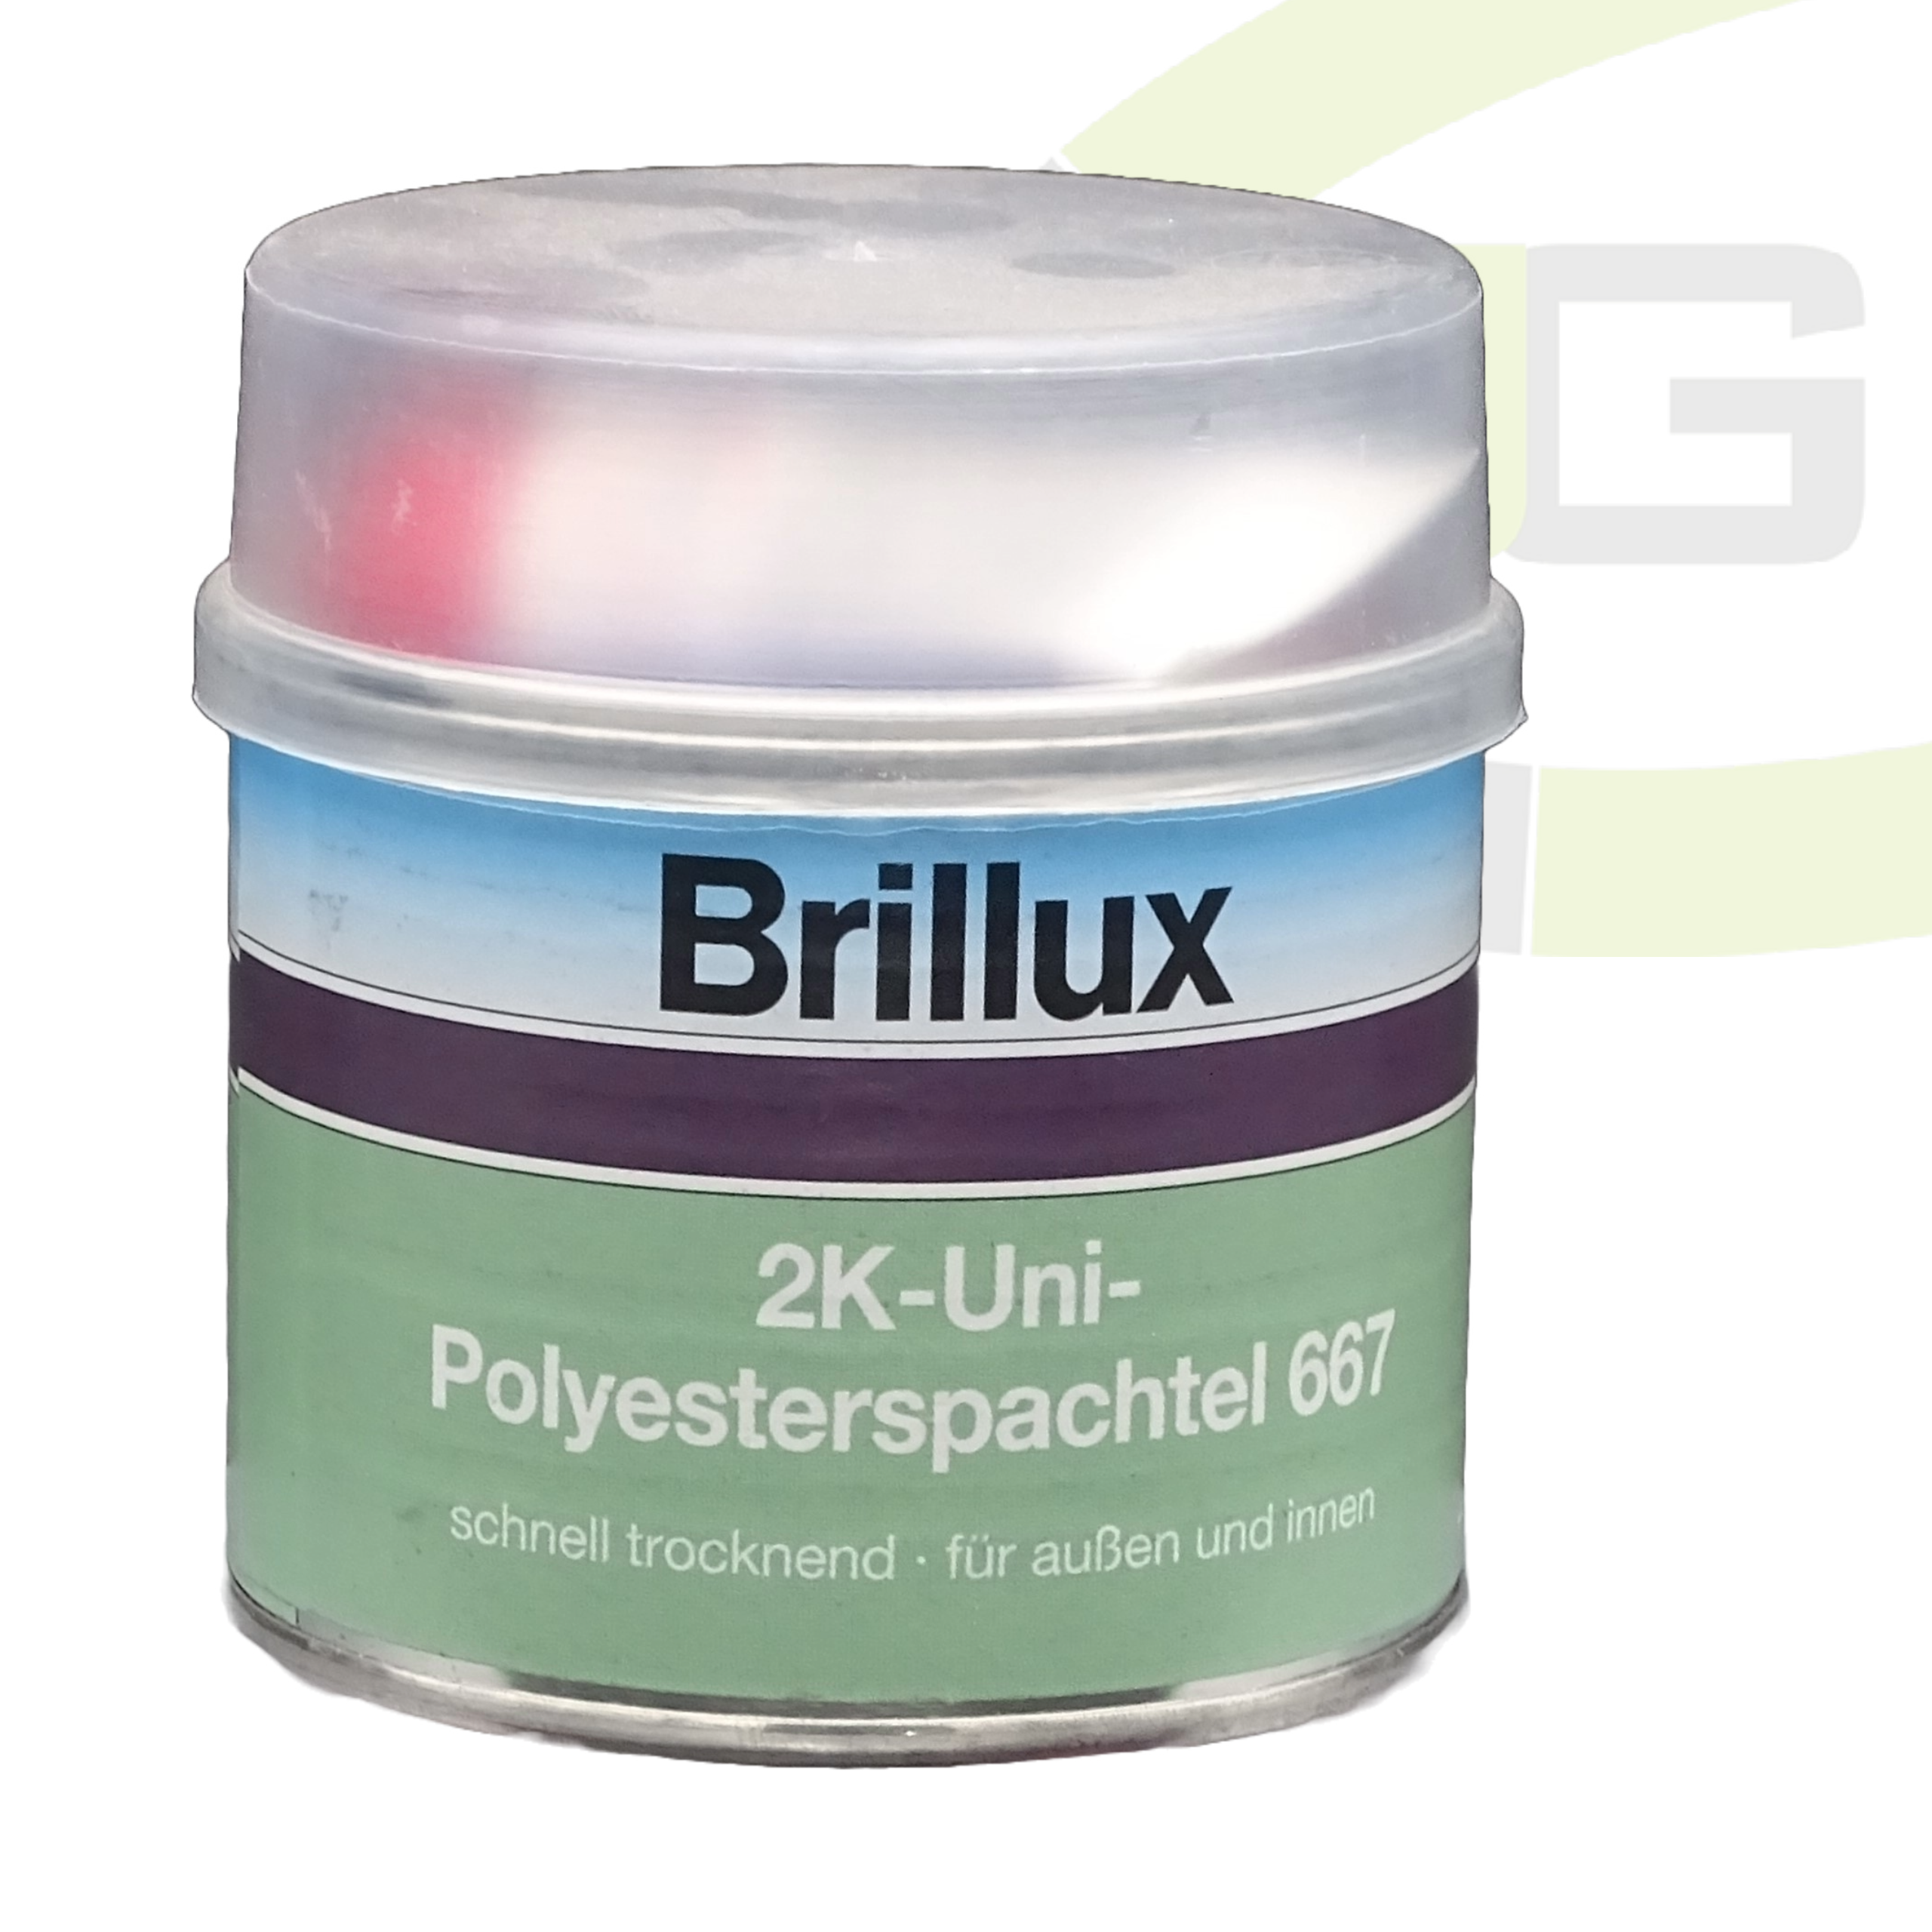 Brillux 2K-Uni-Polyesterspachtel 667 / Holz-, Lack und Metallspachtel